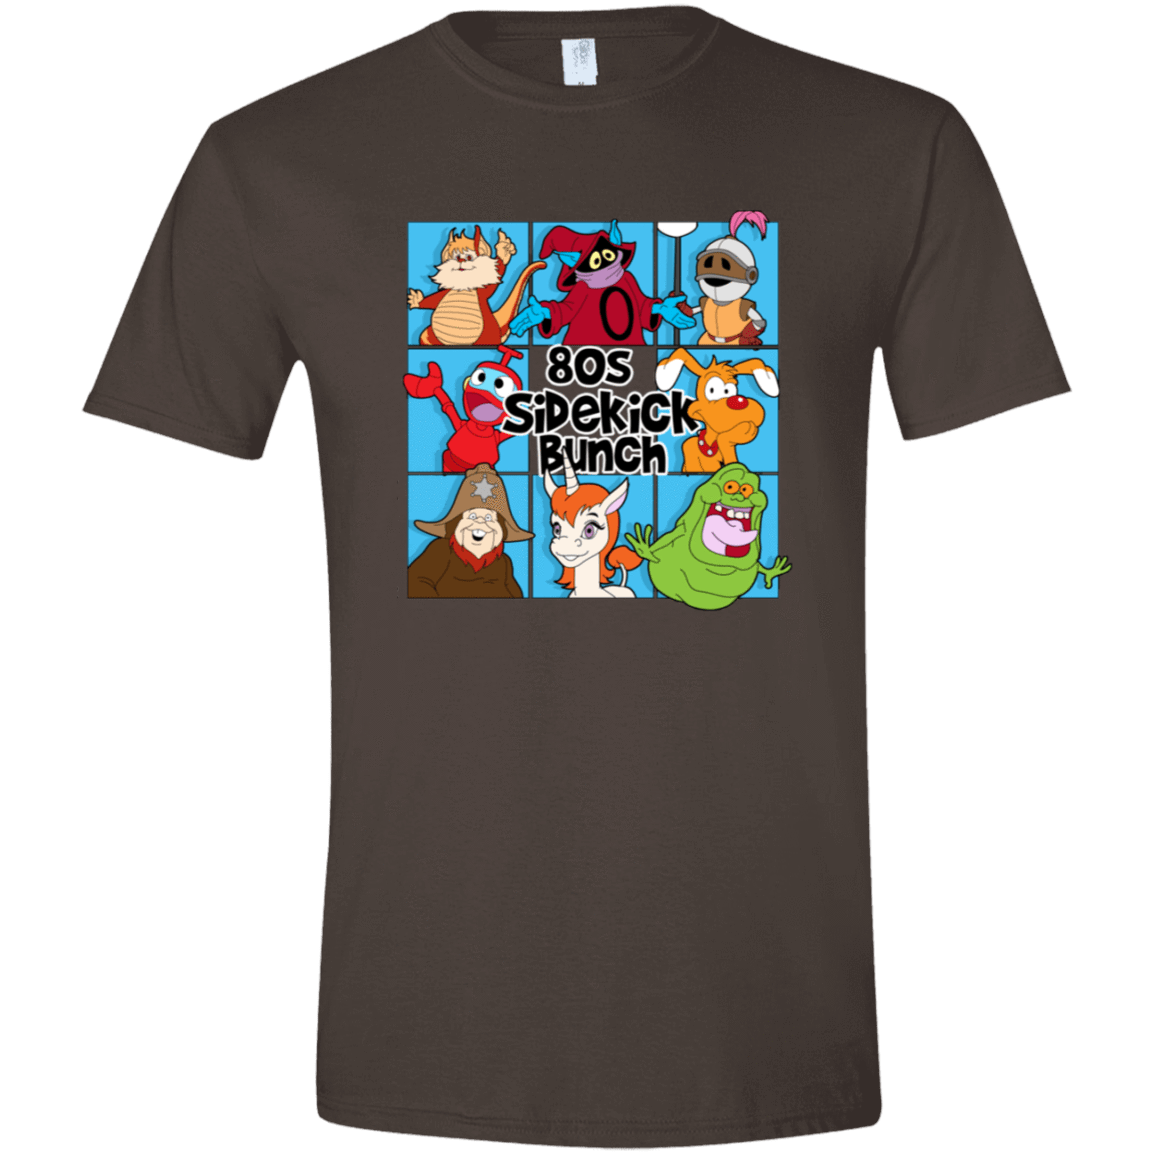 T-Shirts Dark Chocolate / S 80s Sidekick Bunch Men's Semi-Fitted Softstyle